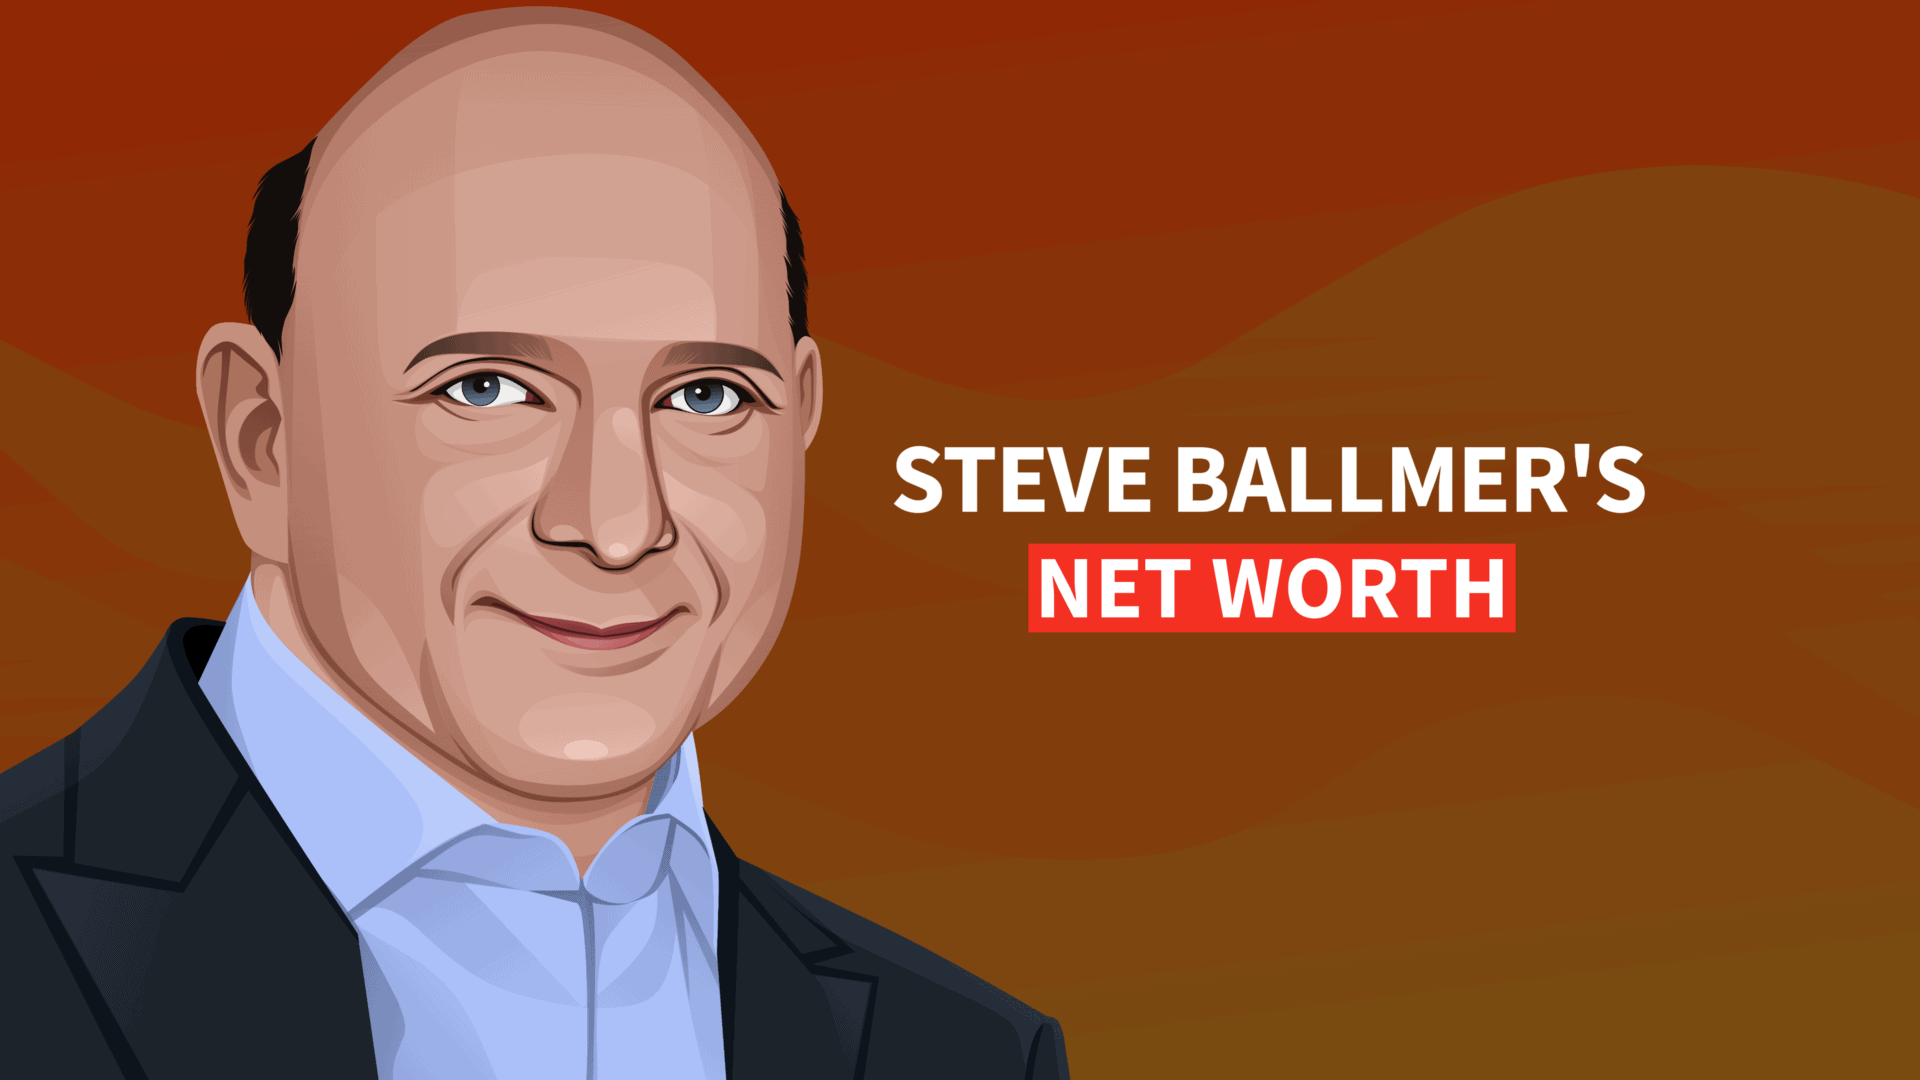 Steve Ballmer's Net Worth and Inspiring Story